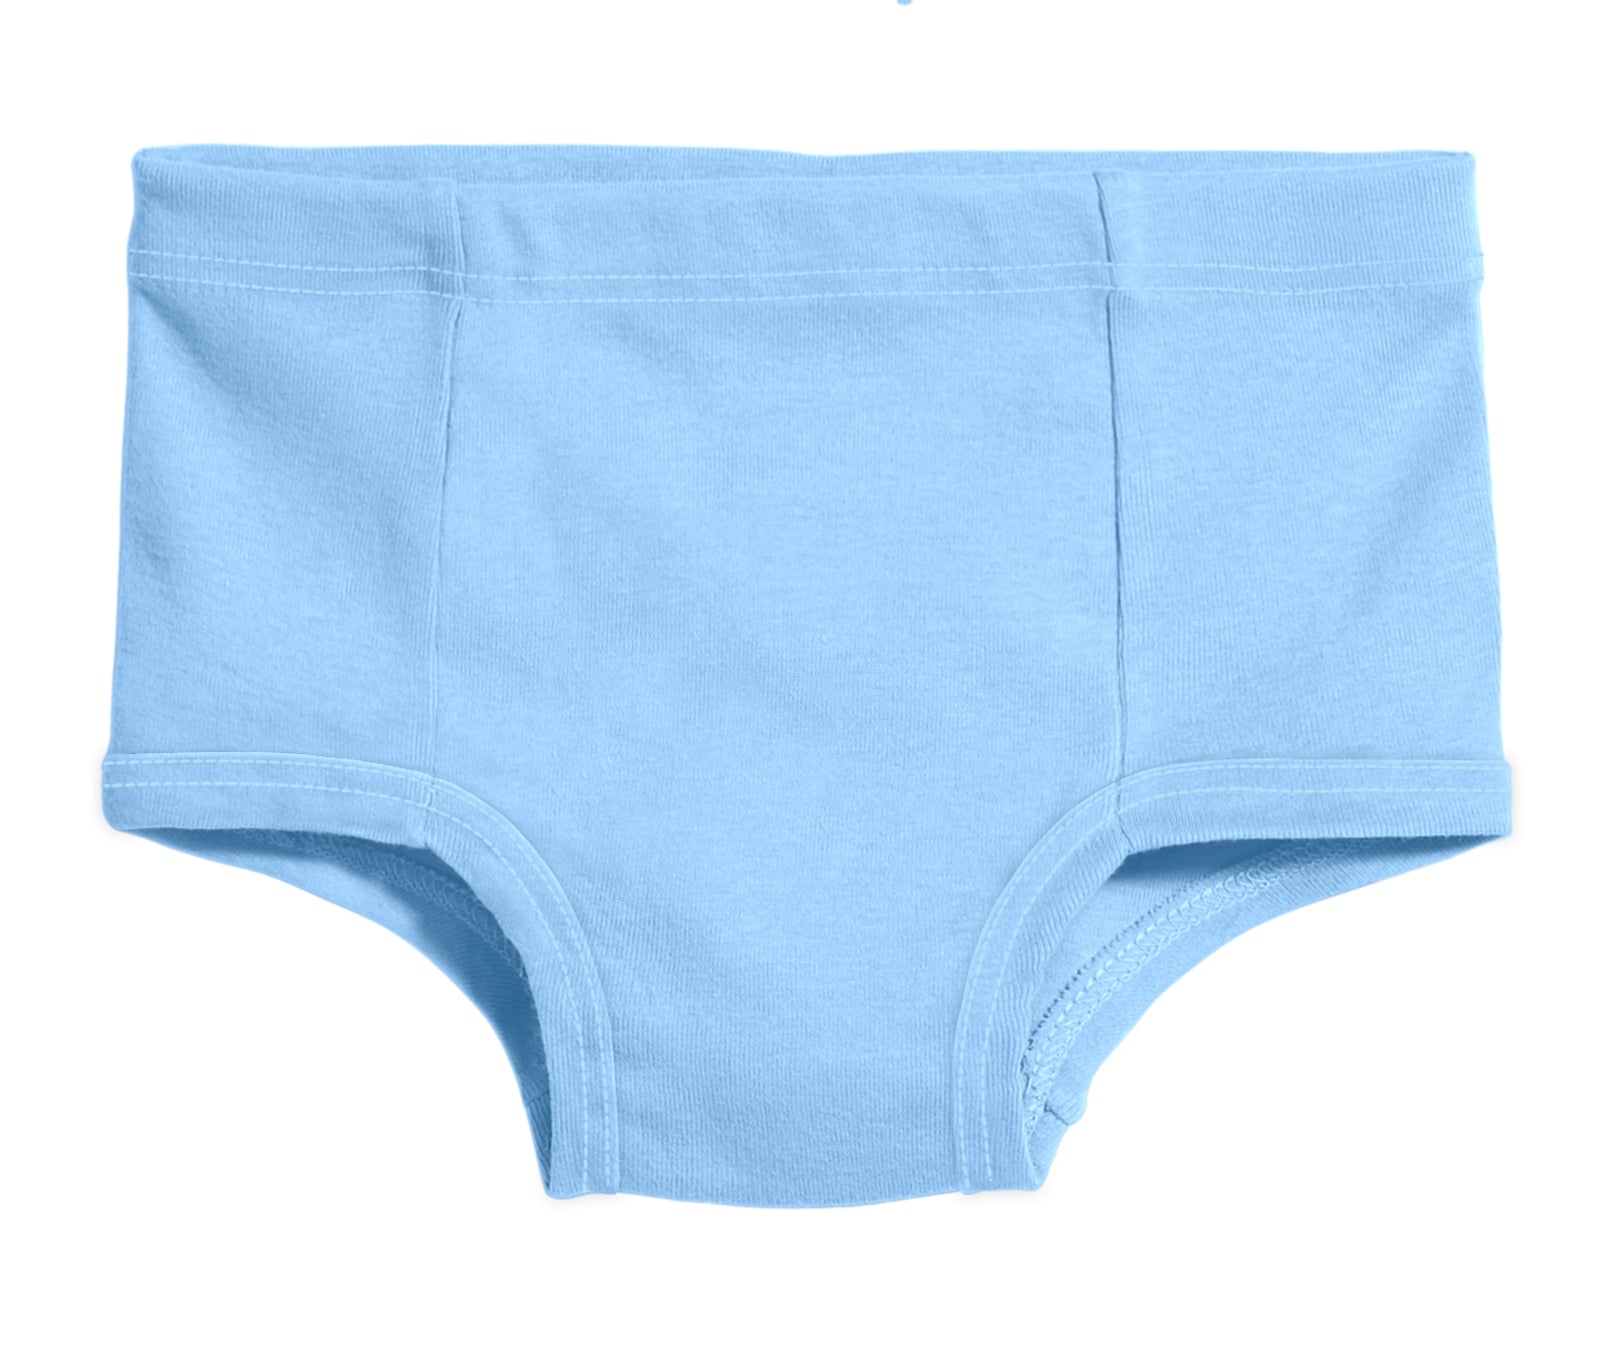 Kids' Underwear for Boys & Girls